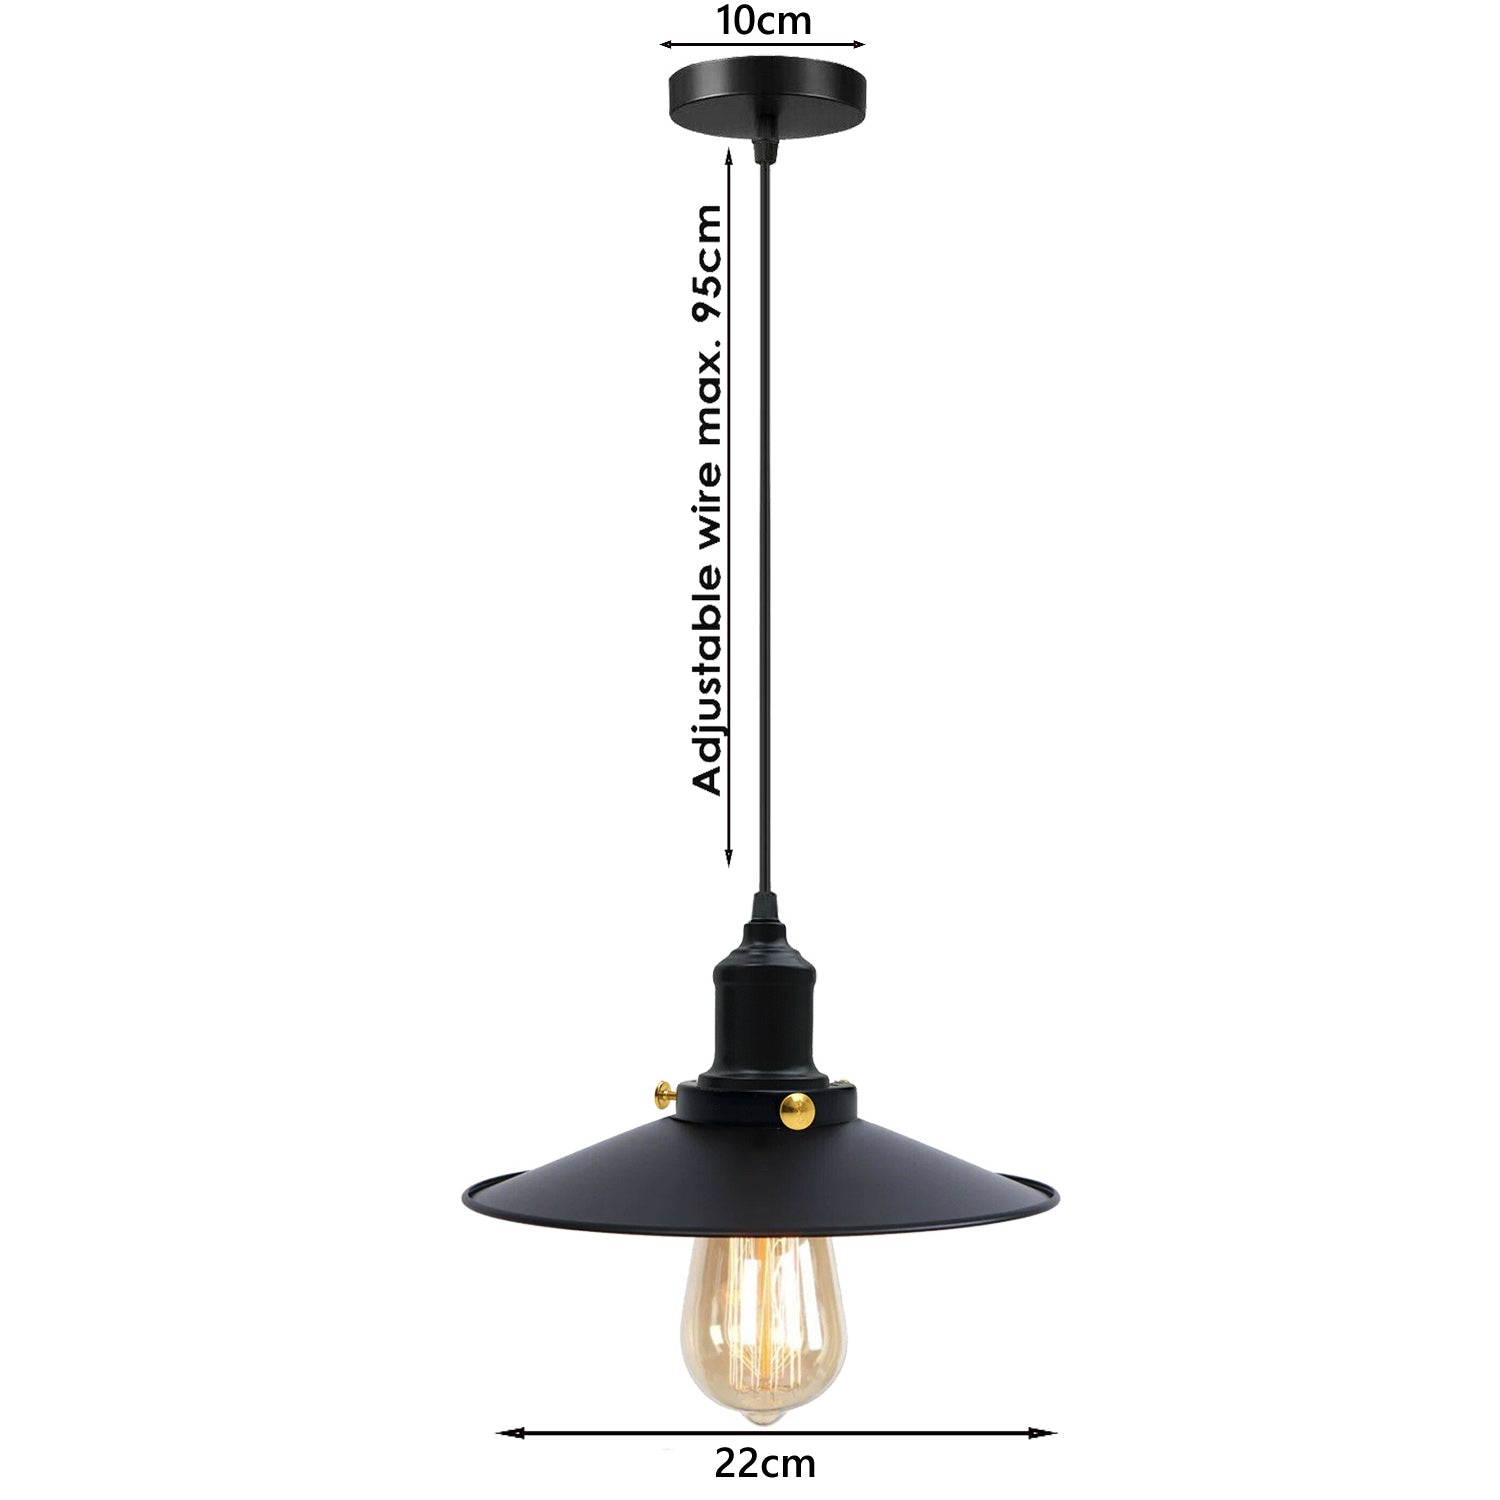 Schwarz-Vintage Industrie – Retro Deckenlampe Leuchte Pendelleuchte Hängelampe Design